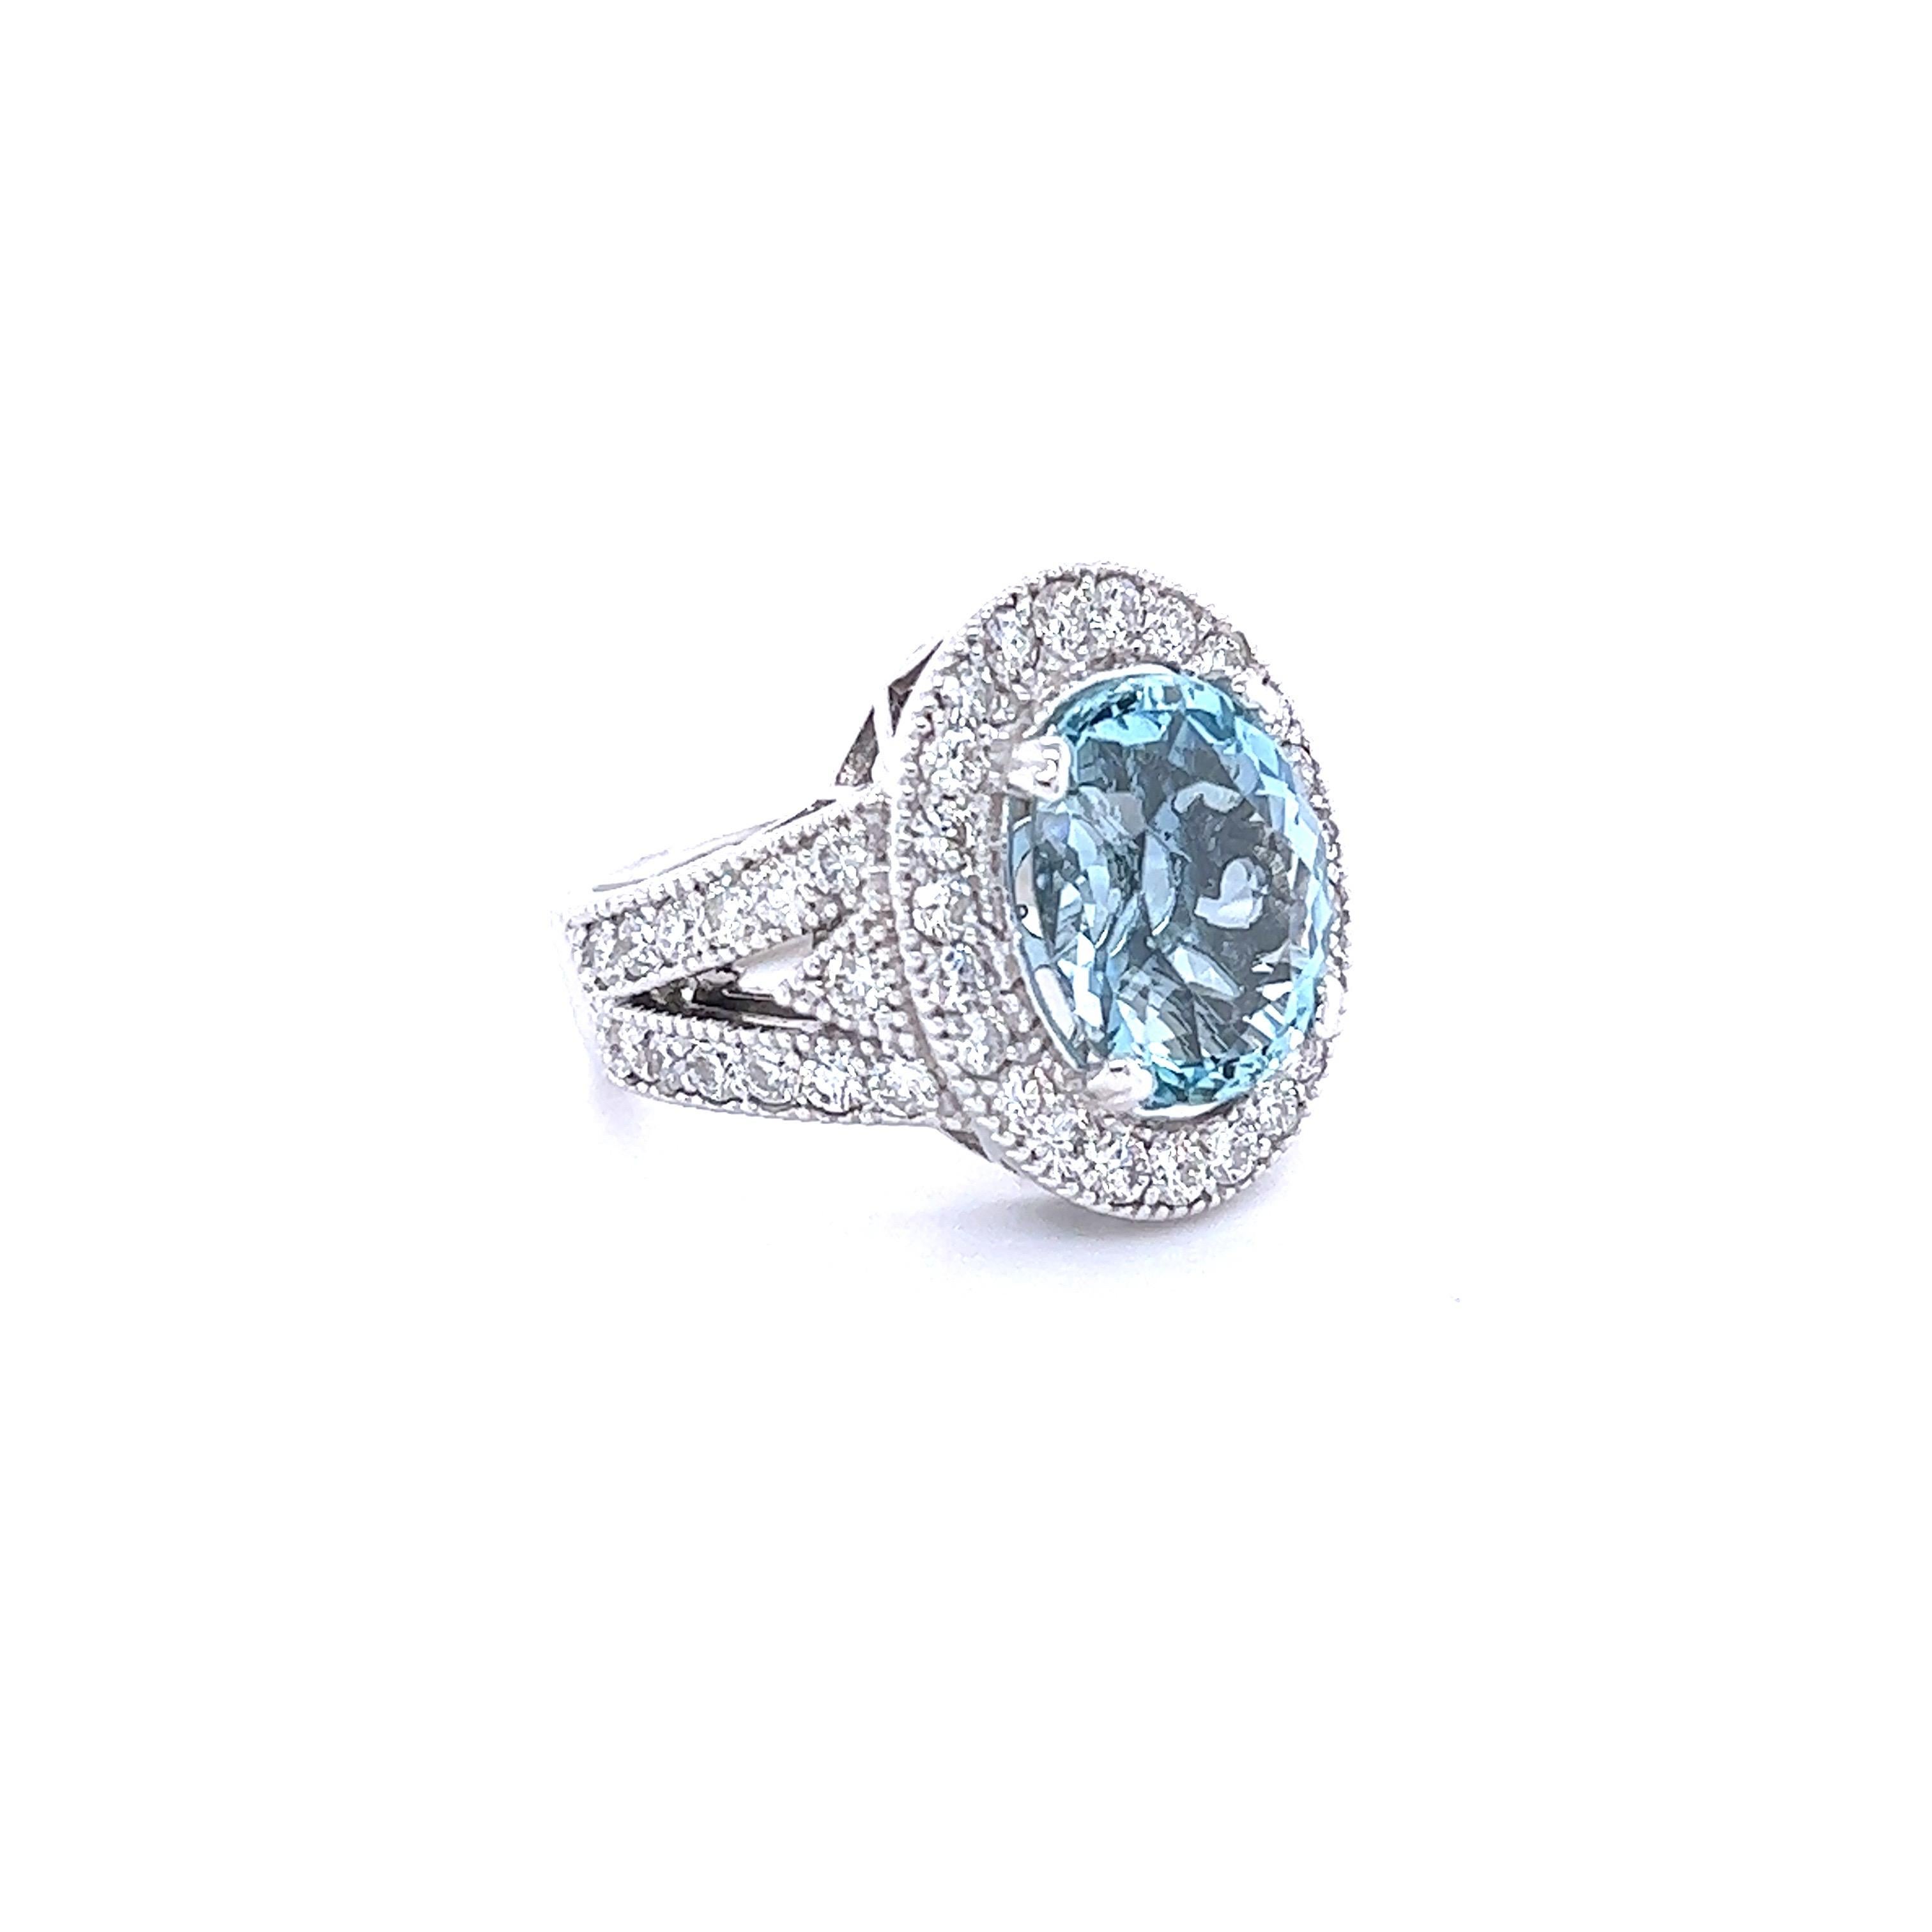 13 carat aquamarine ring